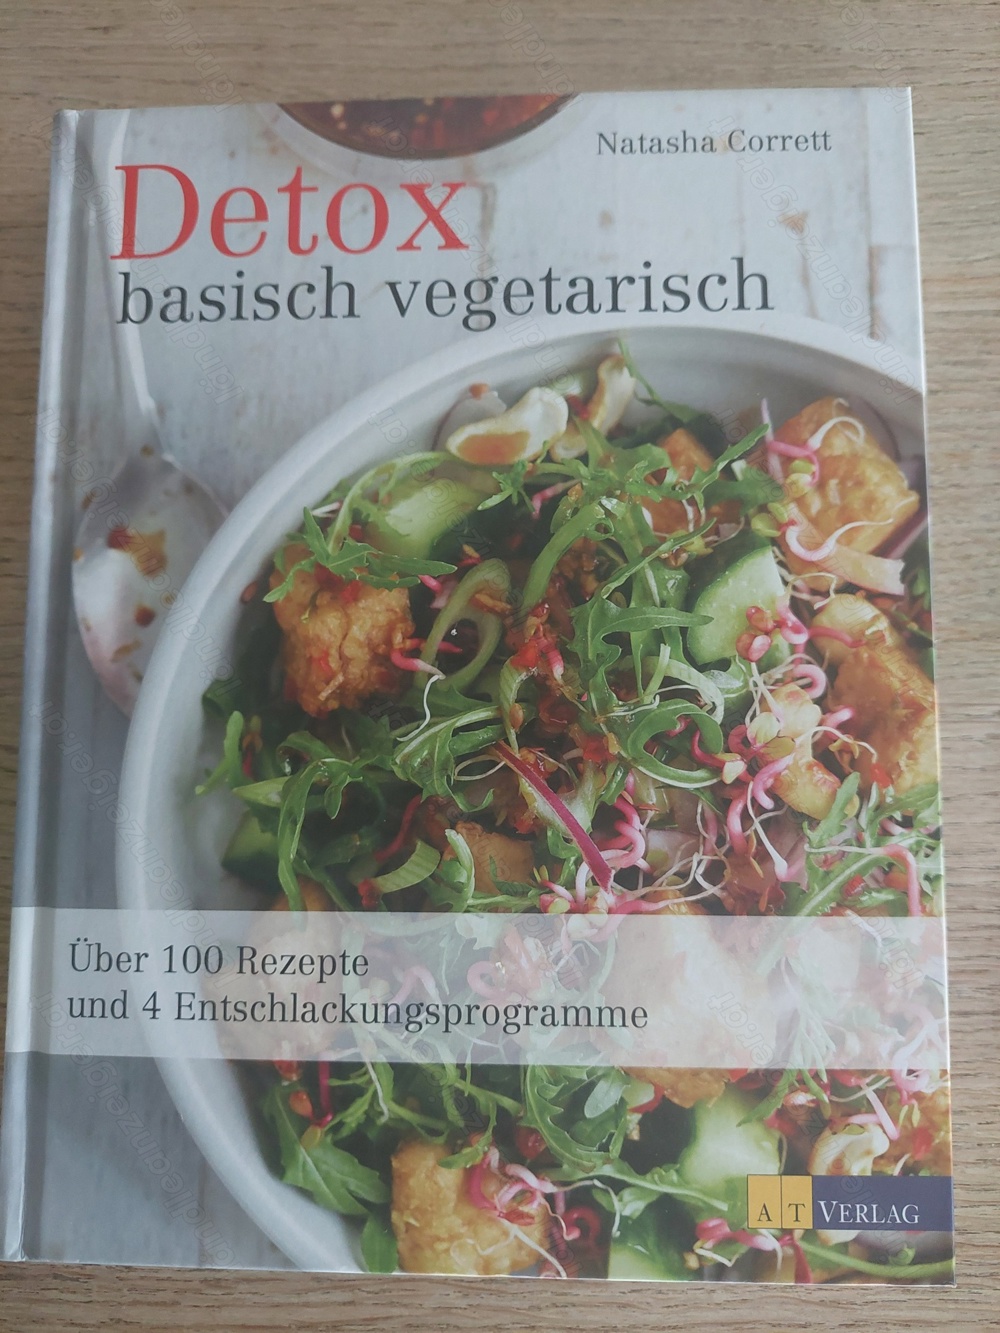 Detox basisch vegetarisch von Natasha Corrett